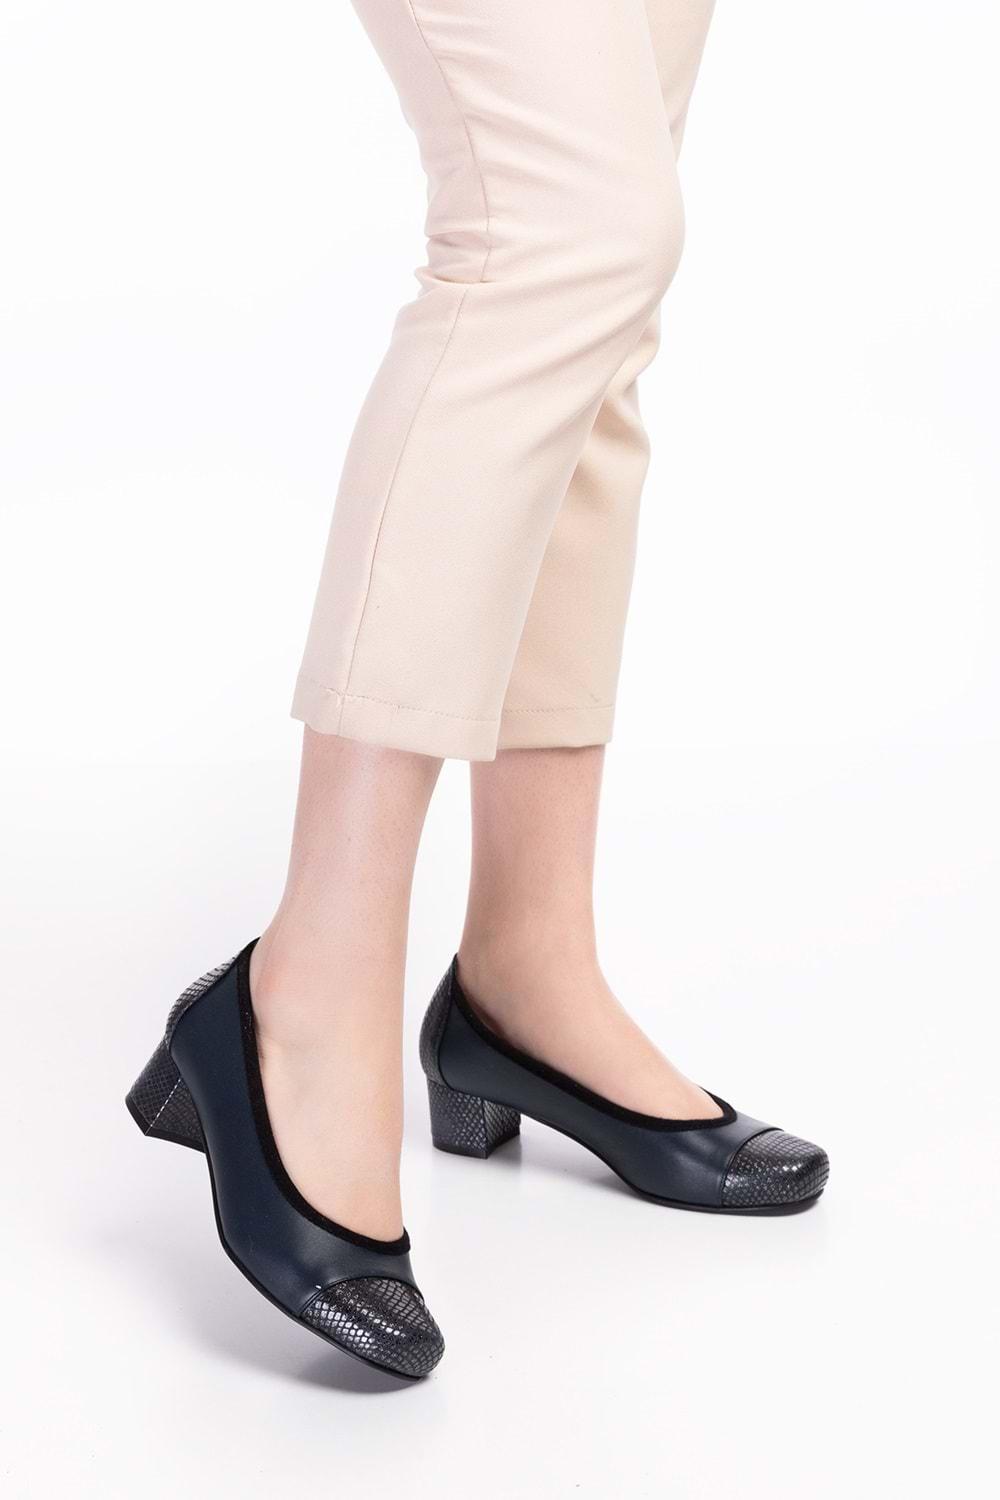 Gondol Kadın Hakiki Deri Rahat Günlük Topuklu Ayakkabı şhn.875 - Lacivert - 34